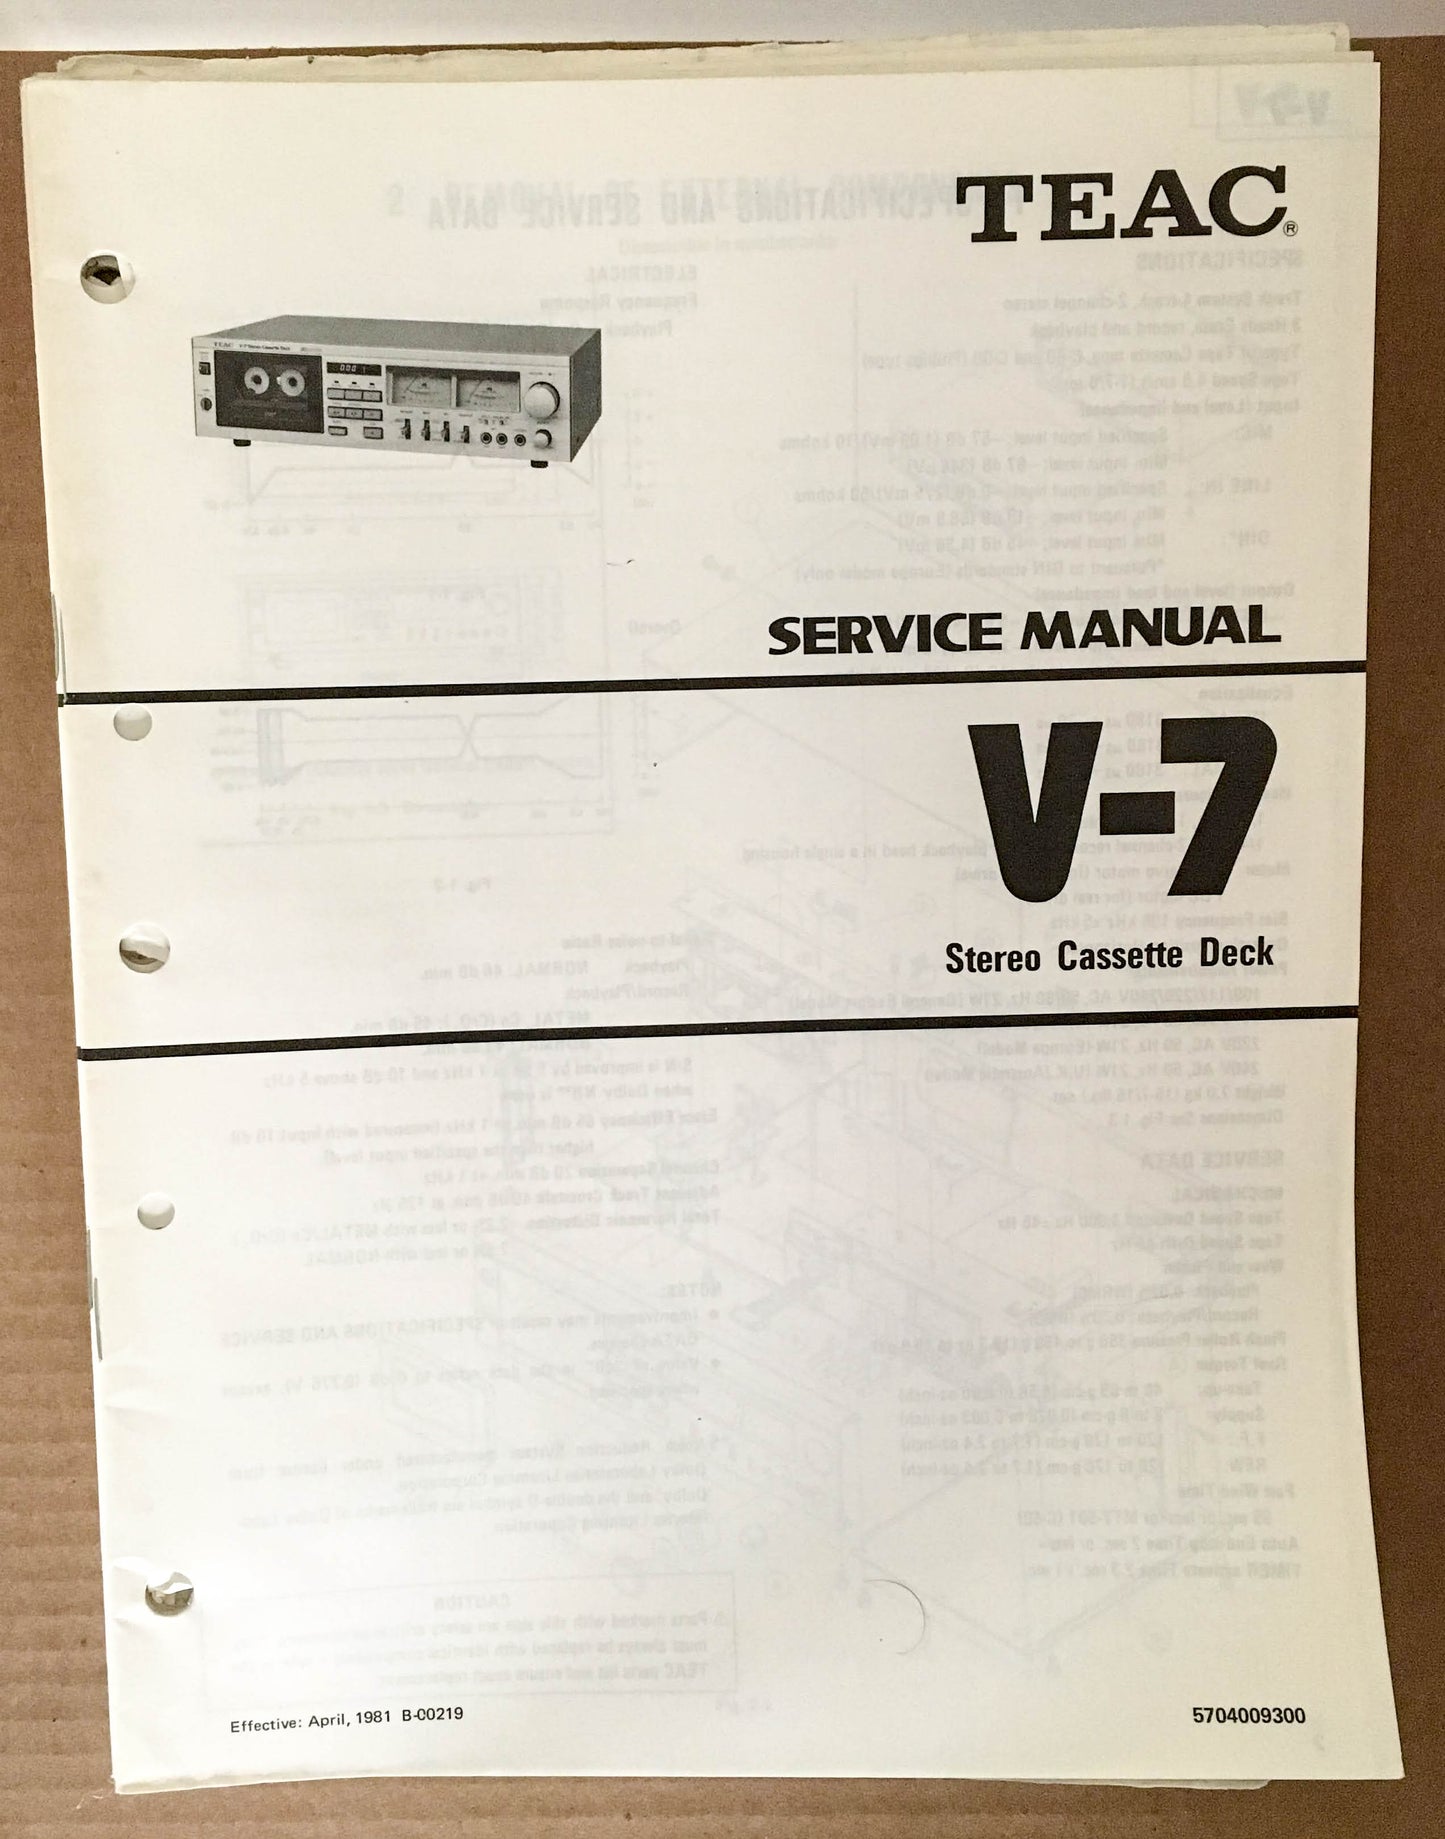 Teac V-7 Stereo Cassette Deck Service Manual *Original*